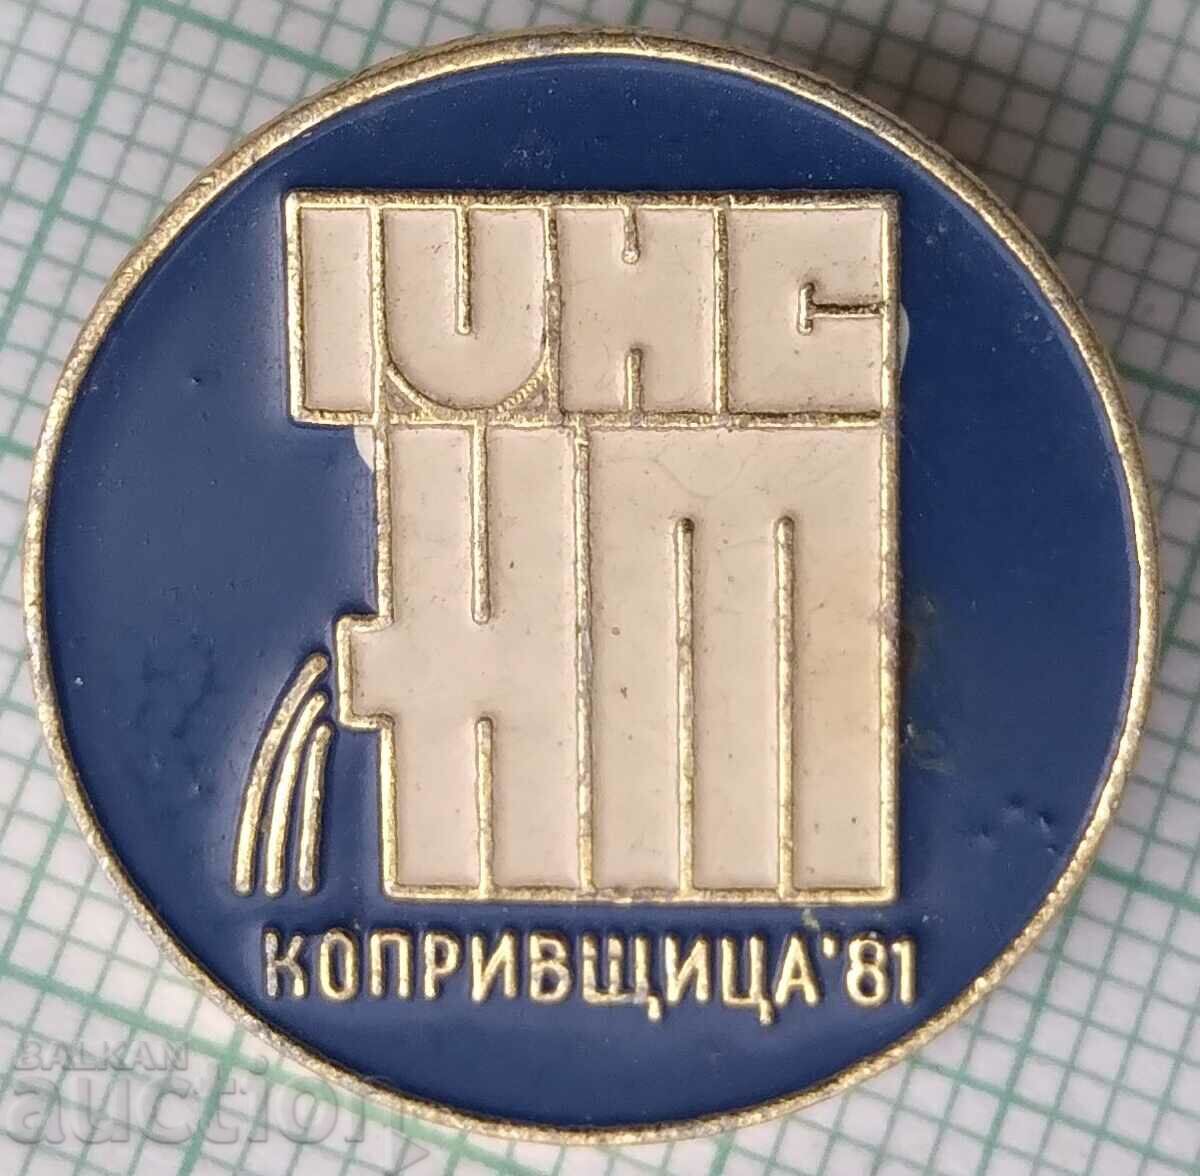 12600 Σήμα - KOPRIVSHTICA 1981 - IV NSNT - Εθνοσυνέλευση